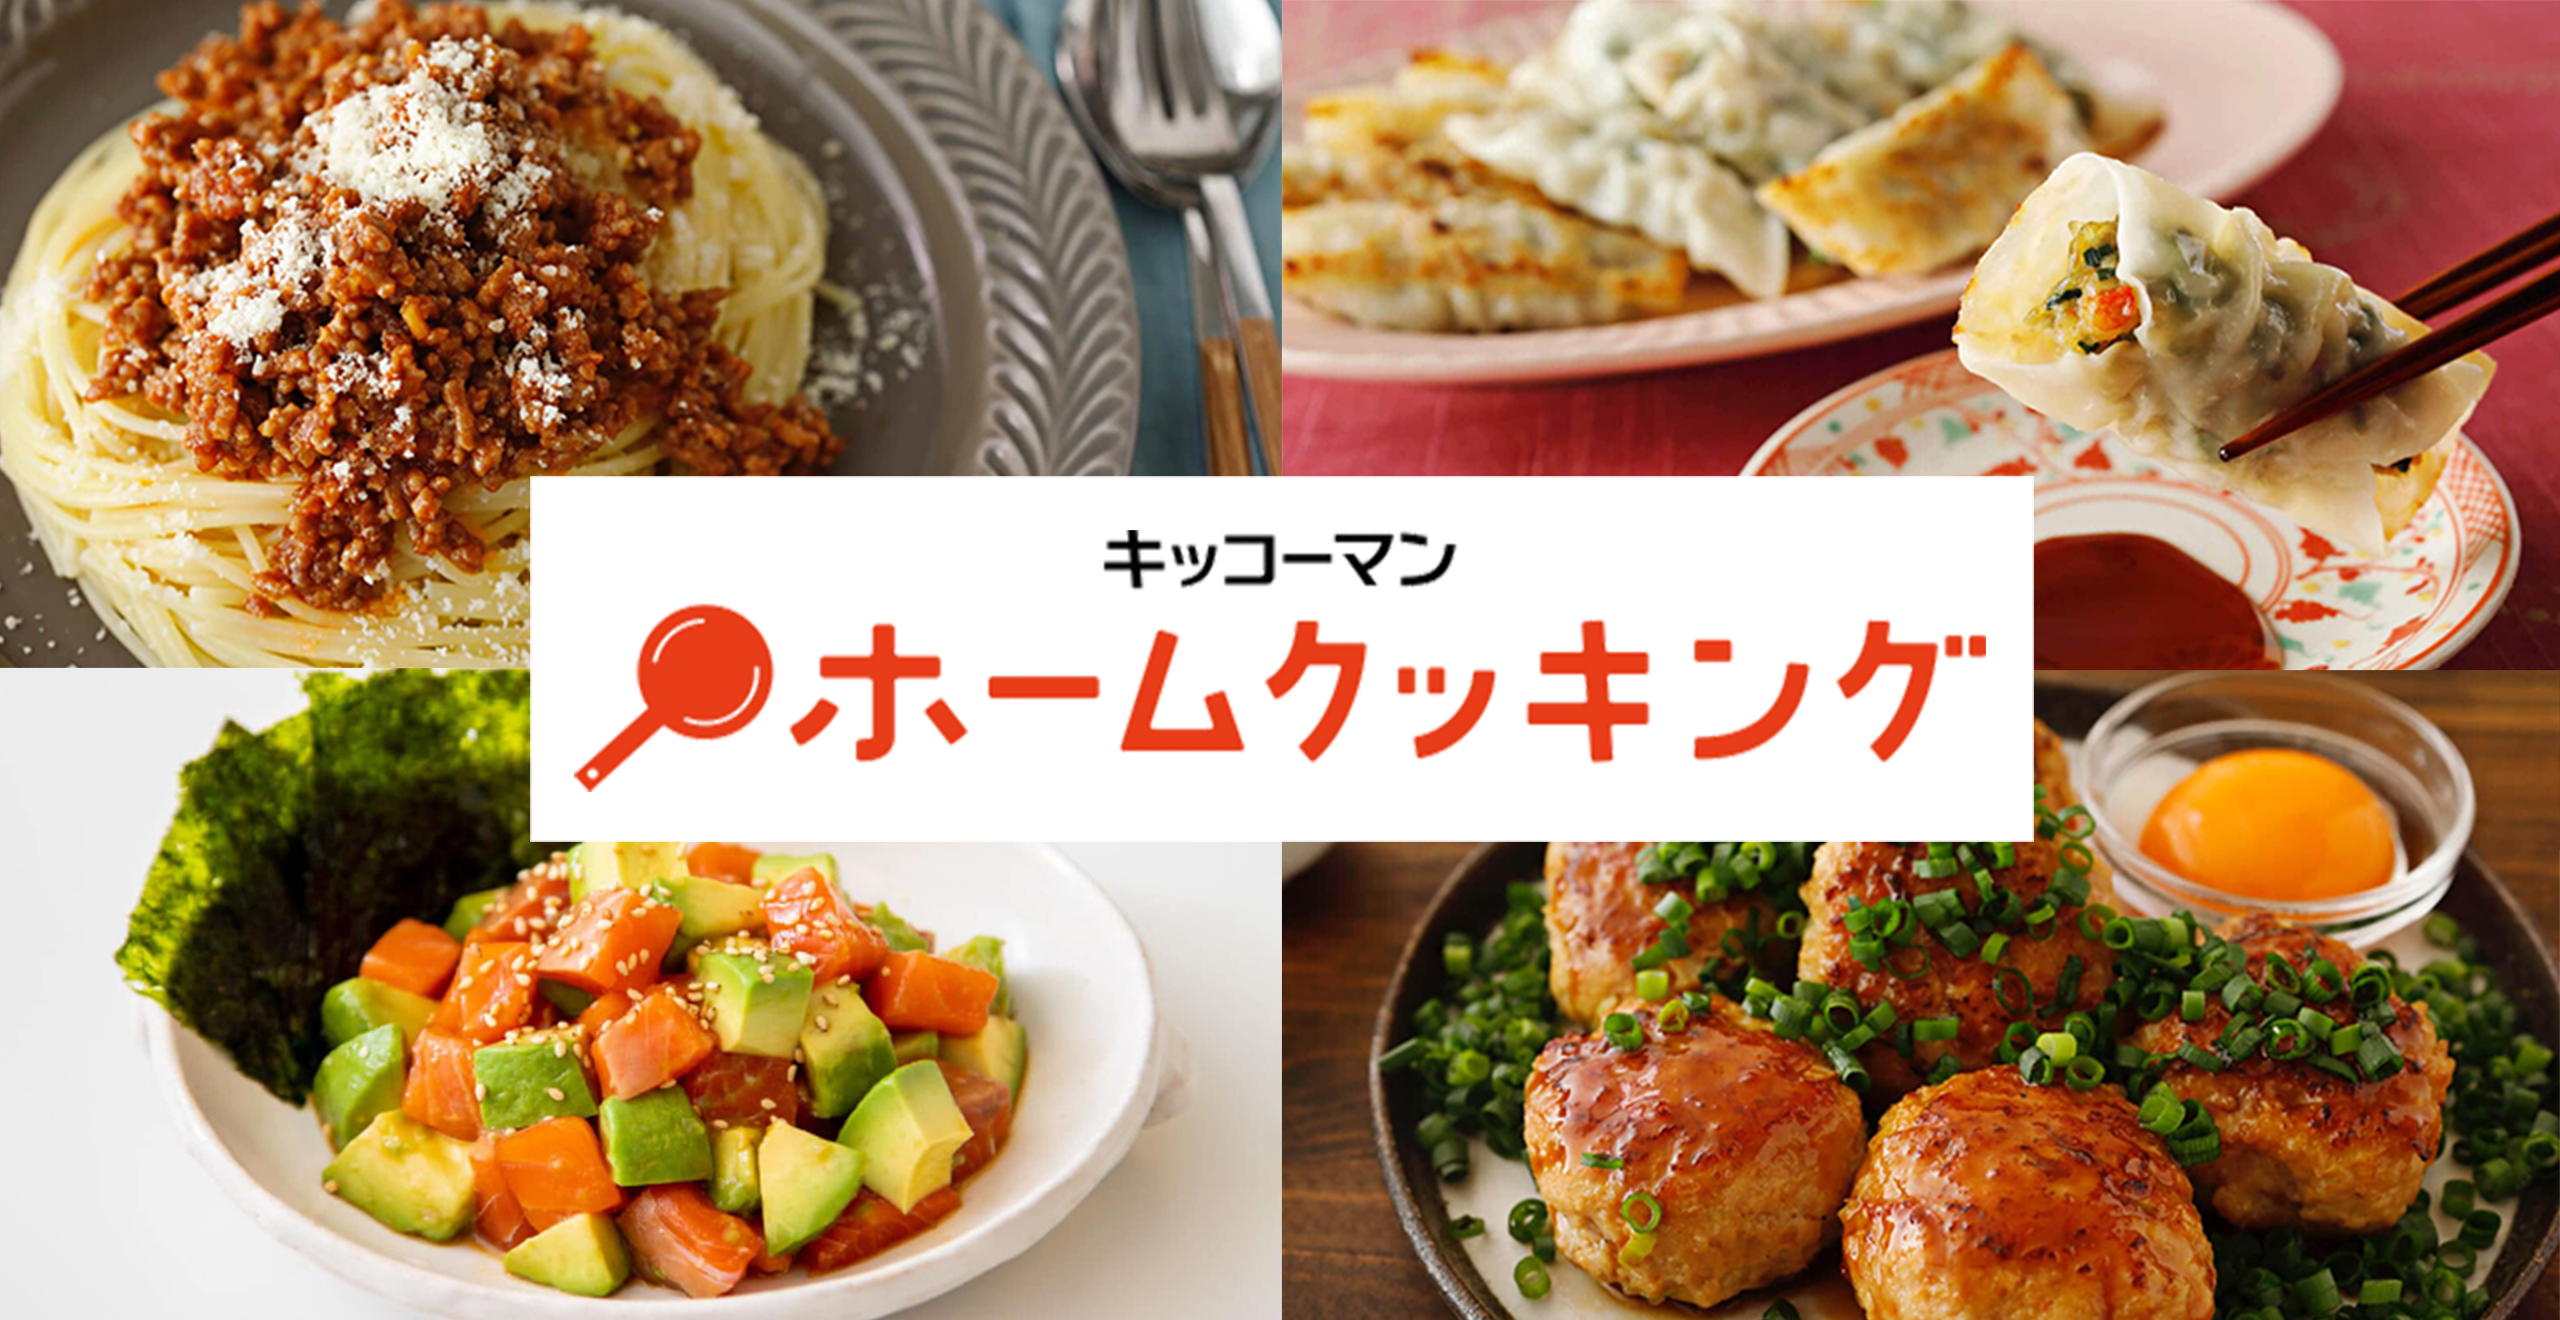 「キッコーマン／ホームクッキング通信」の新しいロゴを中心に、和洋中の料理写真が並んでいる。